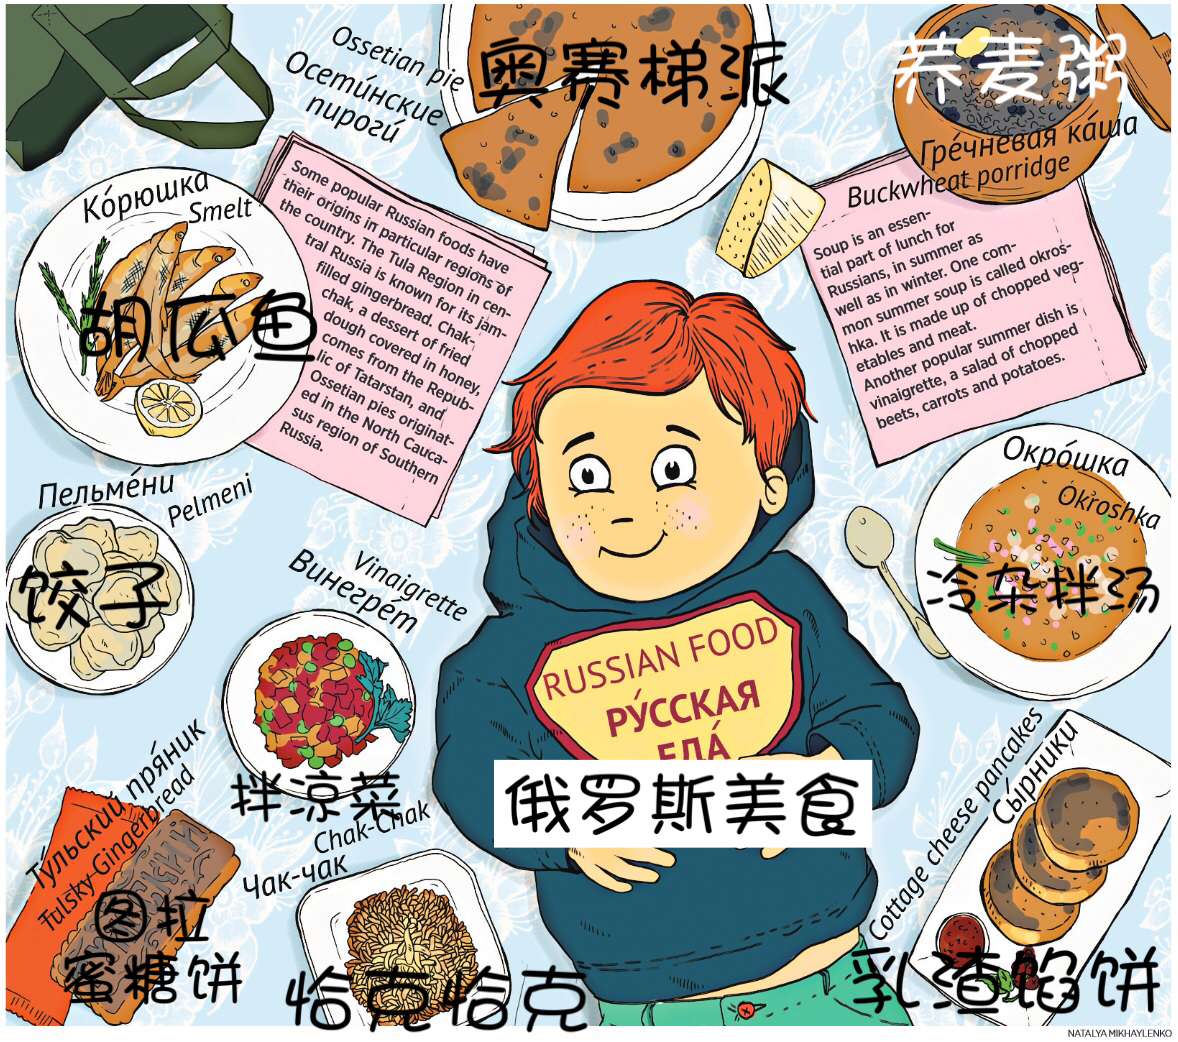 漫画教你学俄语:俄罗斯美食